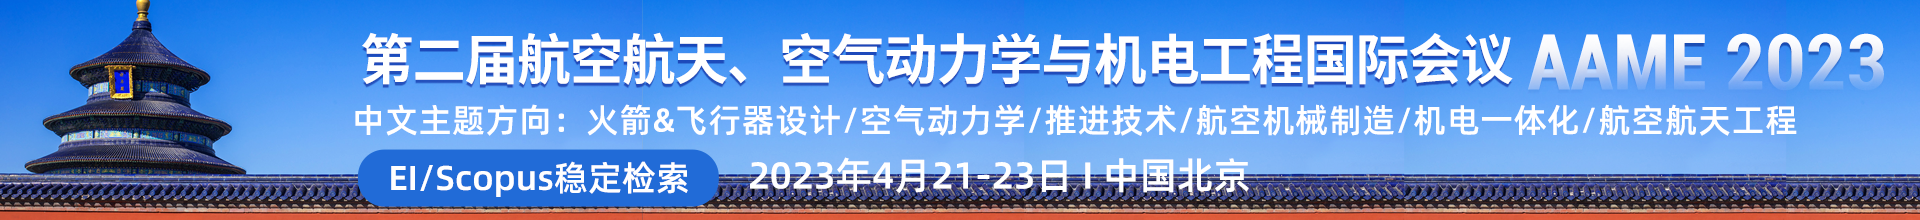 2023年4月21-23日AAME2023-�W�g���h云PC端（上�平�_）-�嘉妍-202201103.png